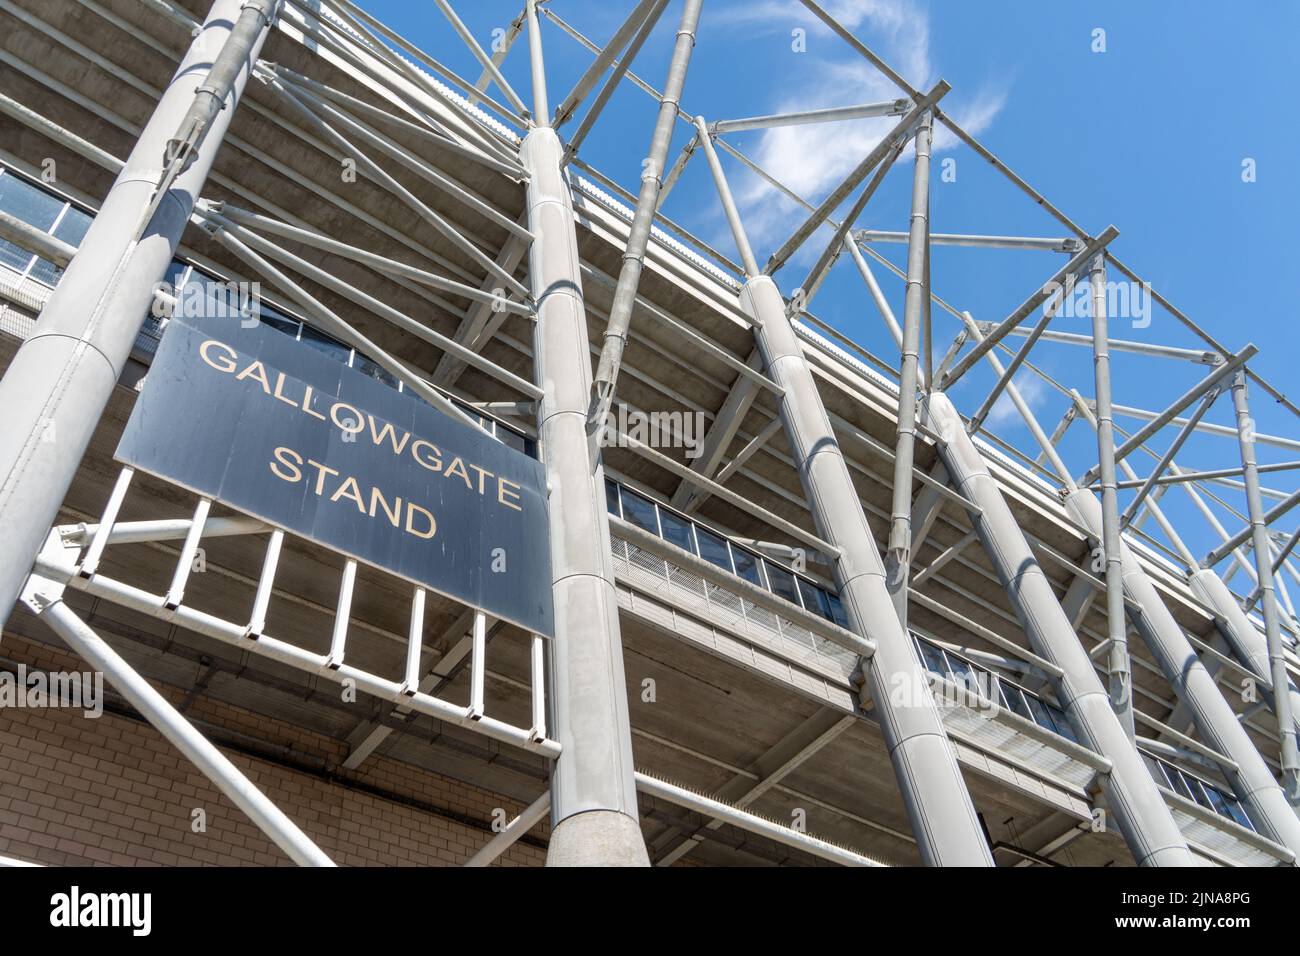 Le stand Gallowgate au stade St James' Park, le terrain du club de football de Newcastle United à Newcastle upon Tyne, Royaume-Uni. Banque D'Images